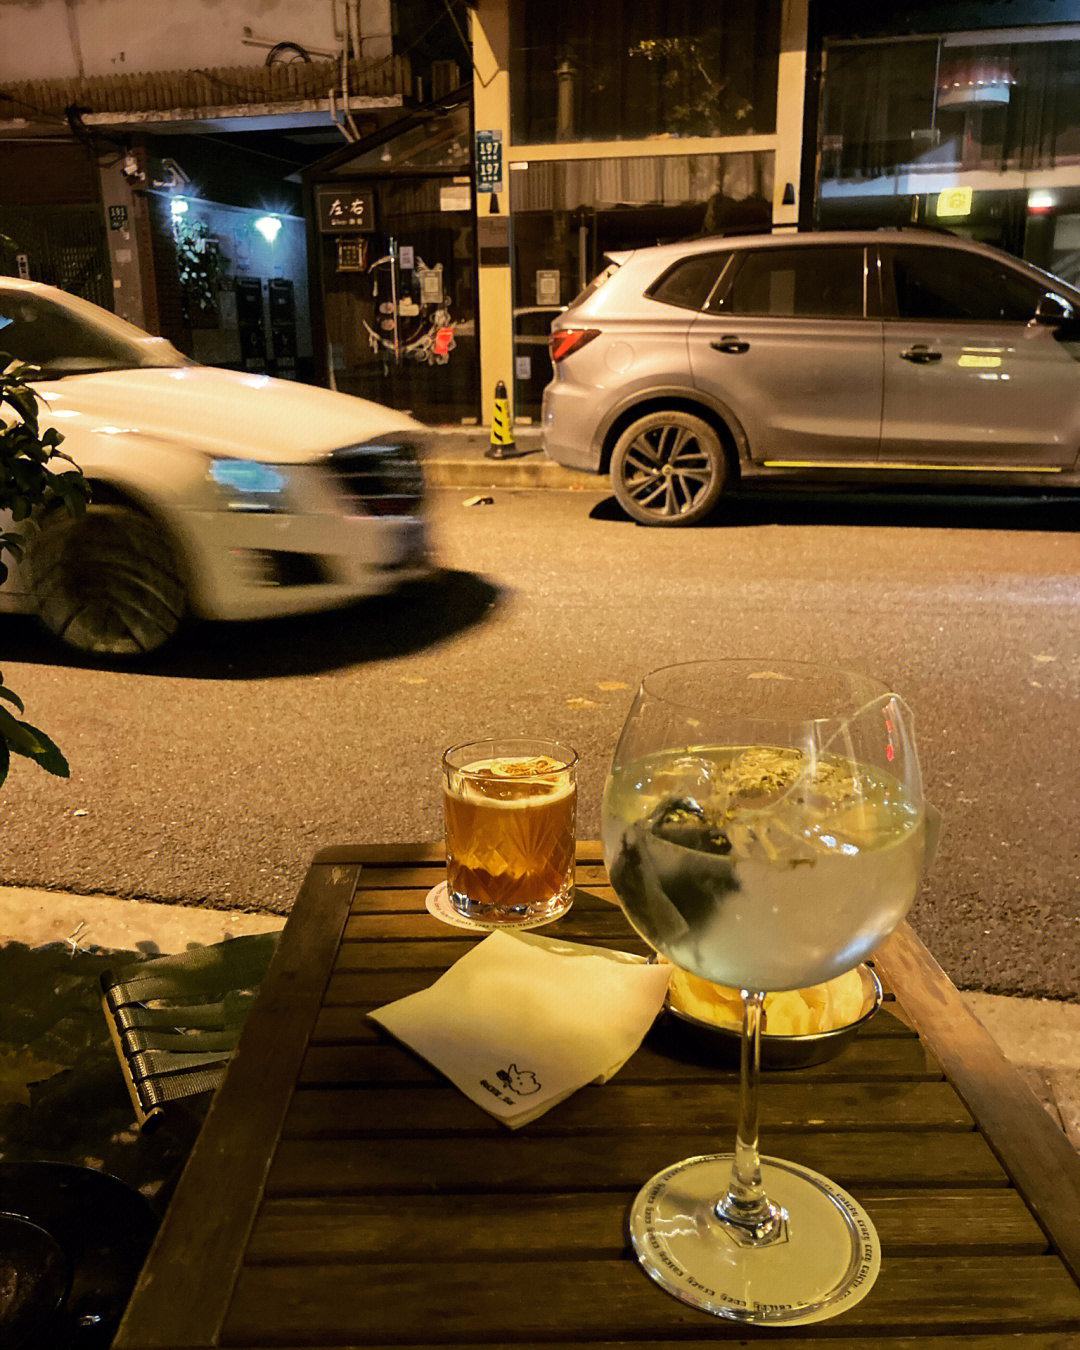 一个在马路喝酒的图片图片